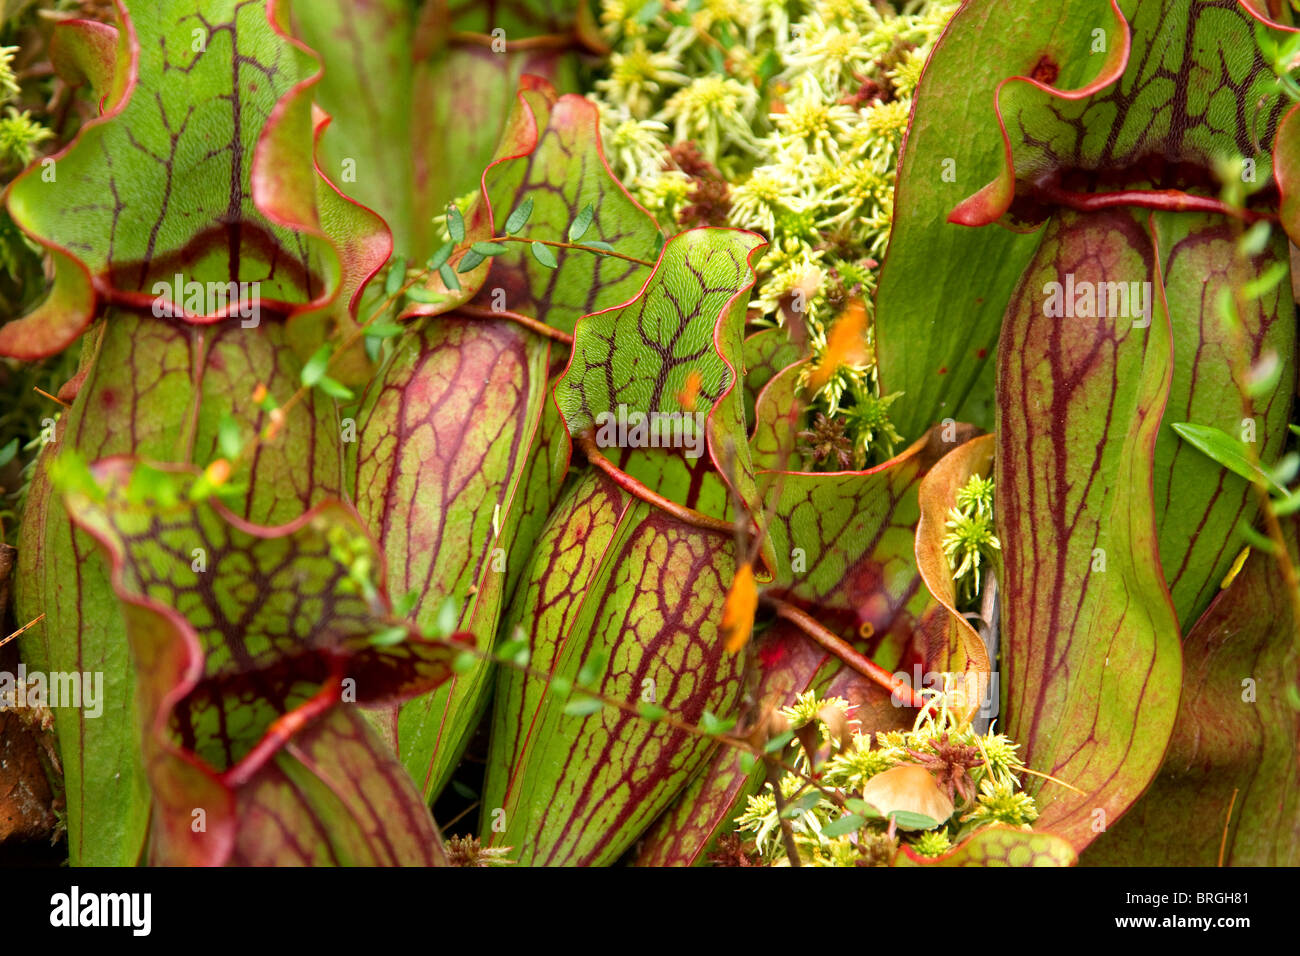 La sarracénie pourpre 'purpurea' arracenia, une plante carnivore sarracénie, croître dans une tourbière de la Nouvelle-Angleterre dans le Vermont, USA. Banque D'Images